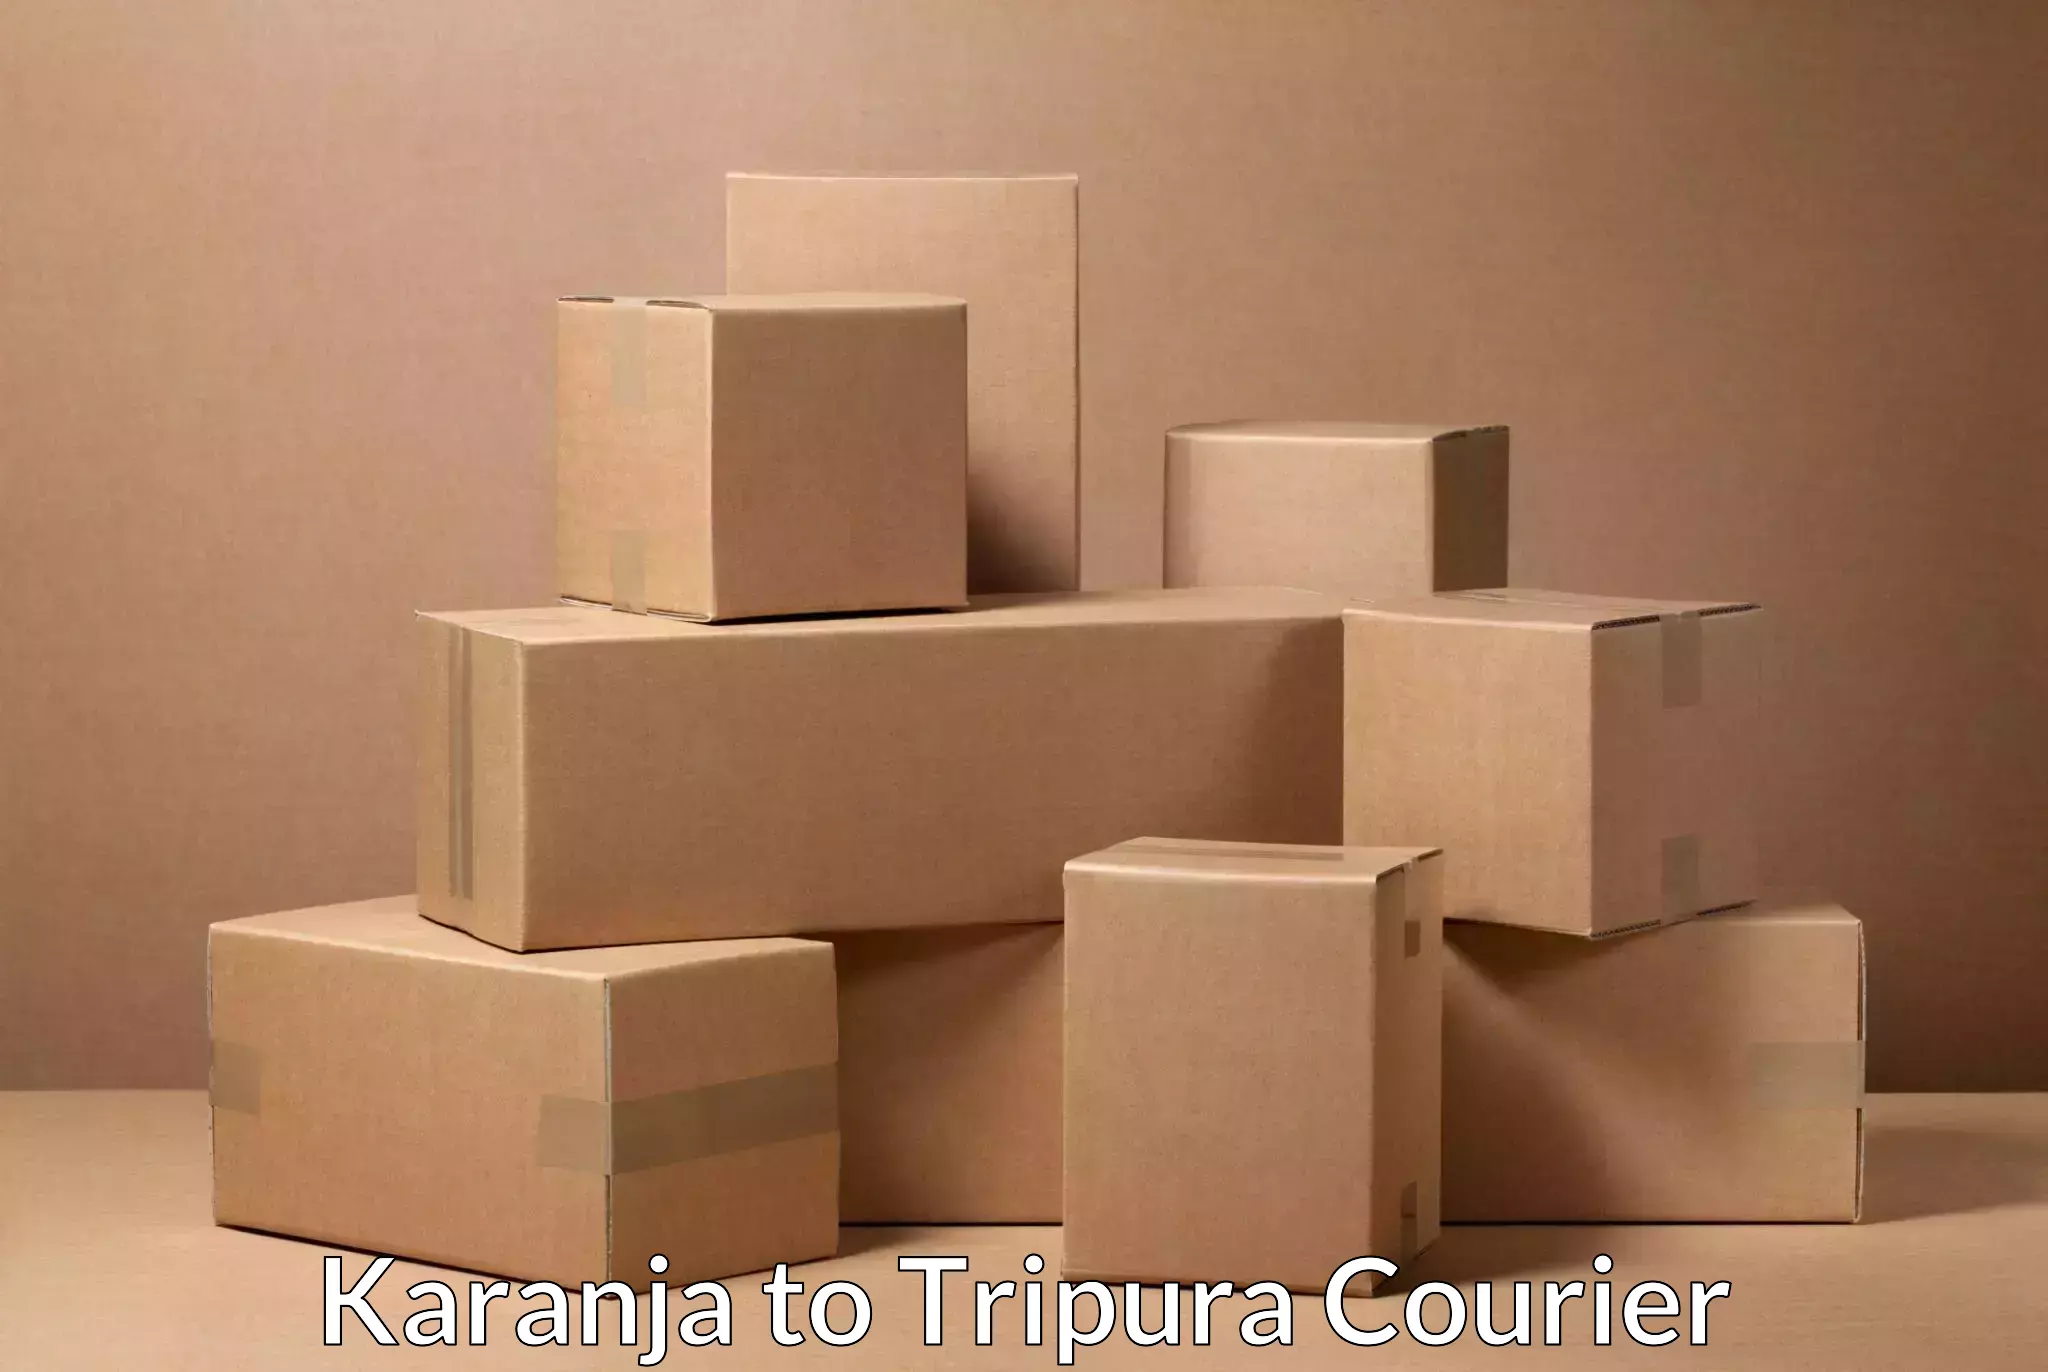 Efficient order fulfillment in Karanja to IIIT Agartala